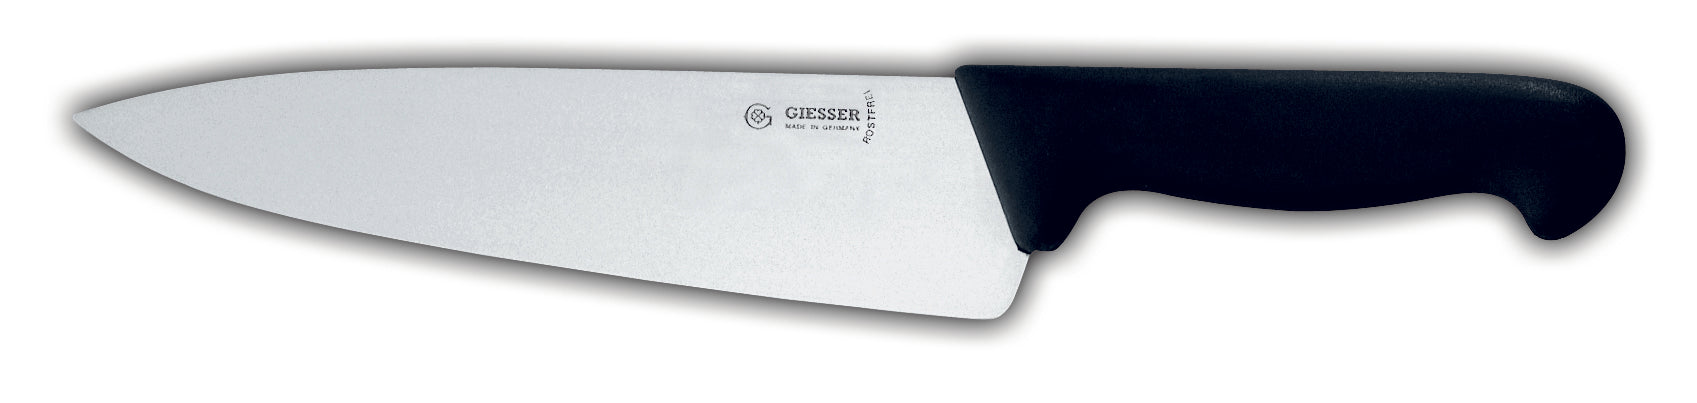 Matfer Bourgeat Giesser Messer Chefs Knife Length Of Blade 7 3/4"  182112